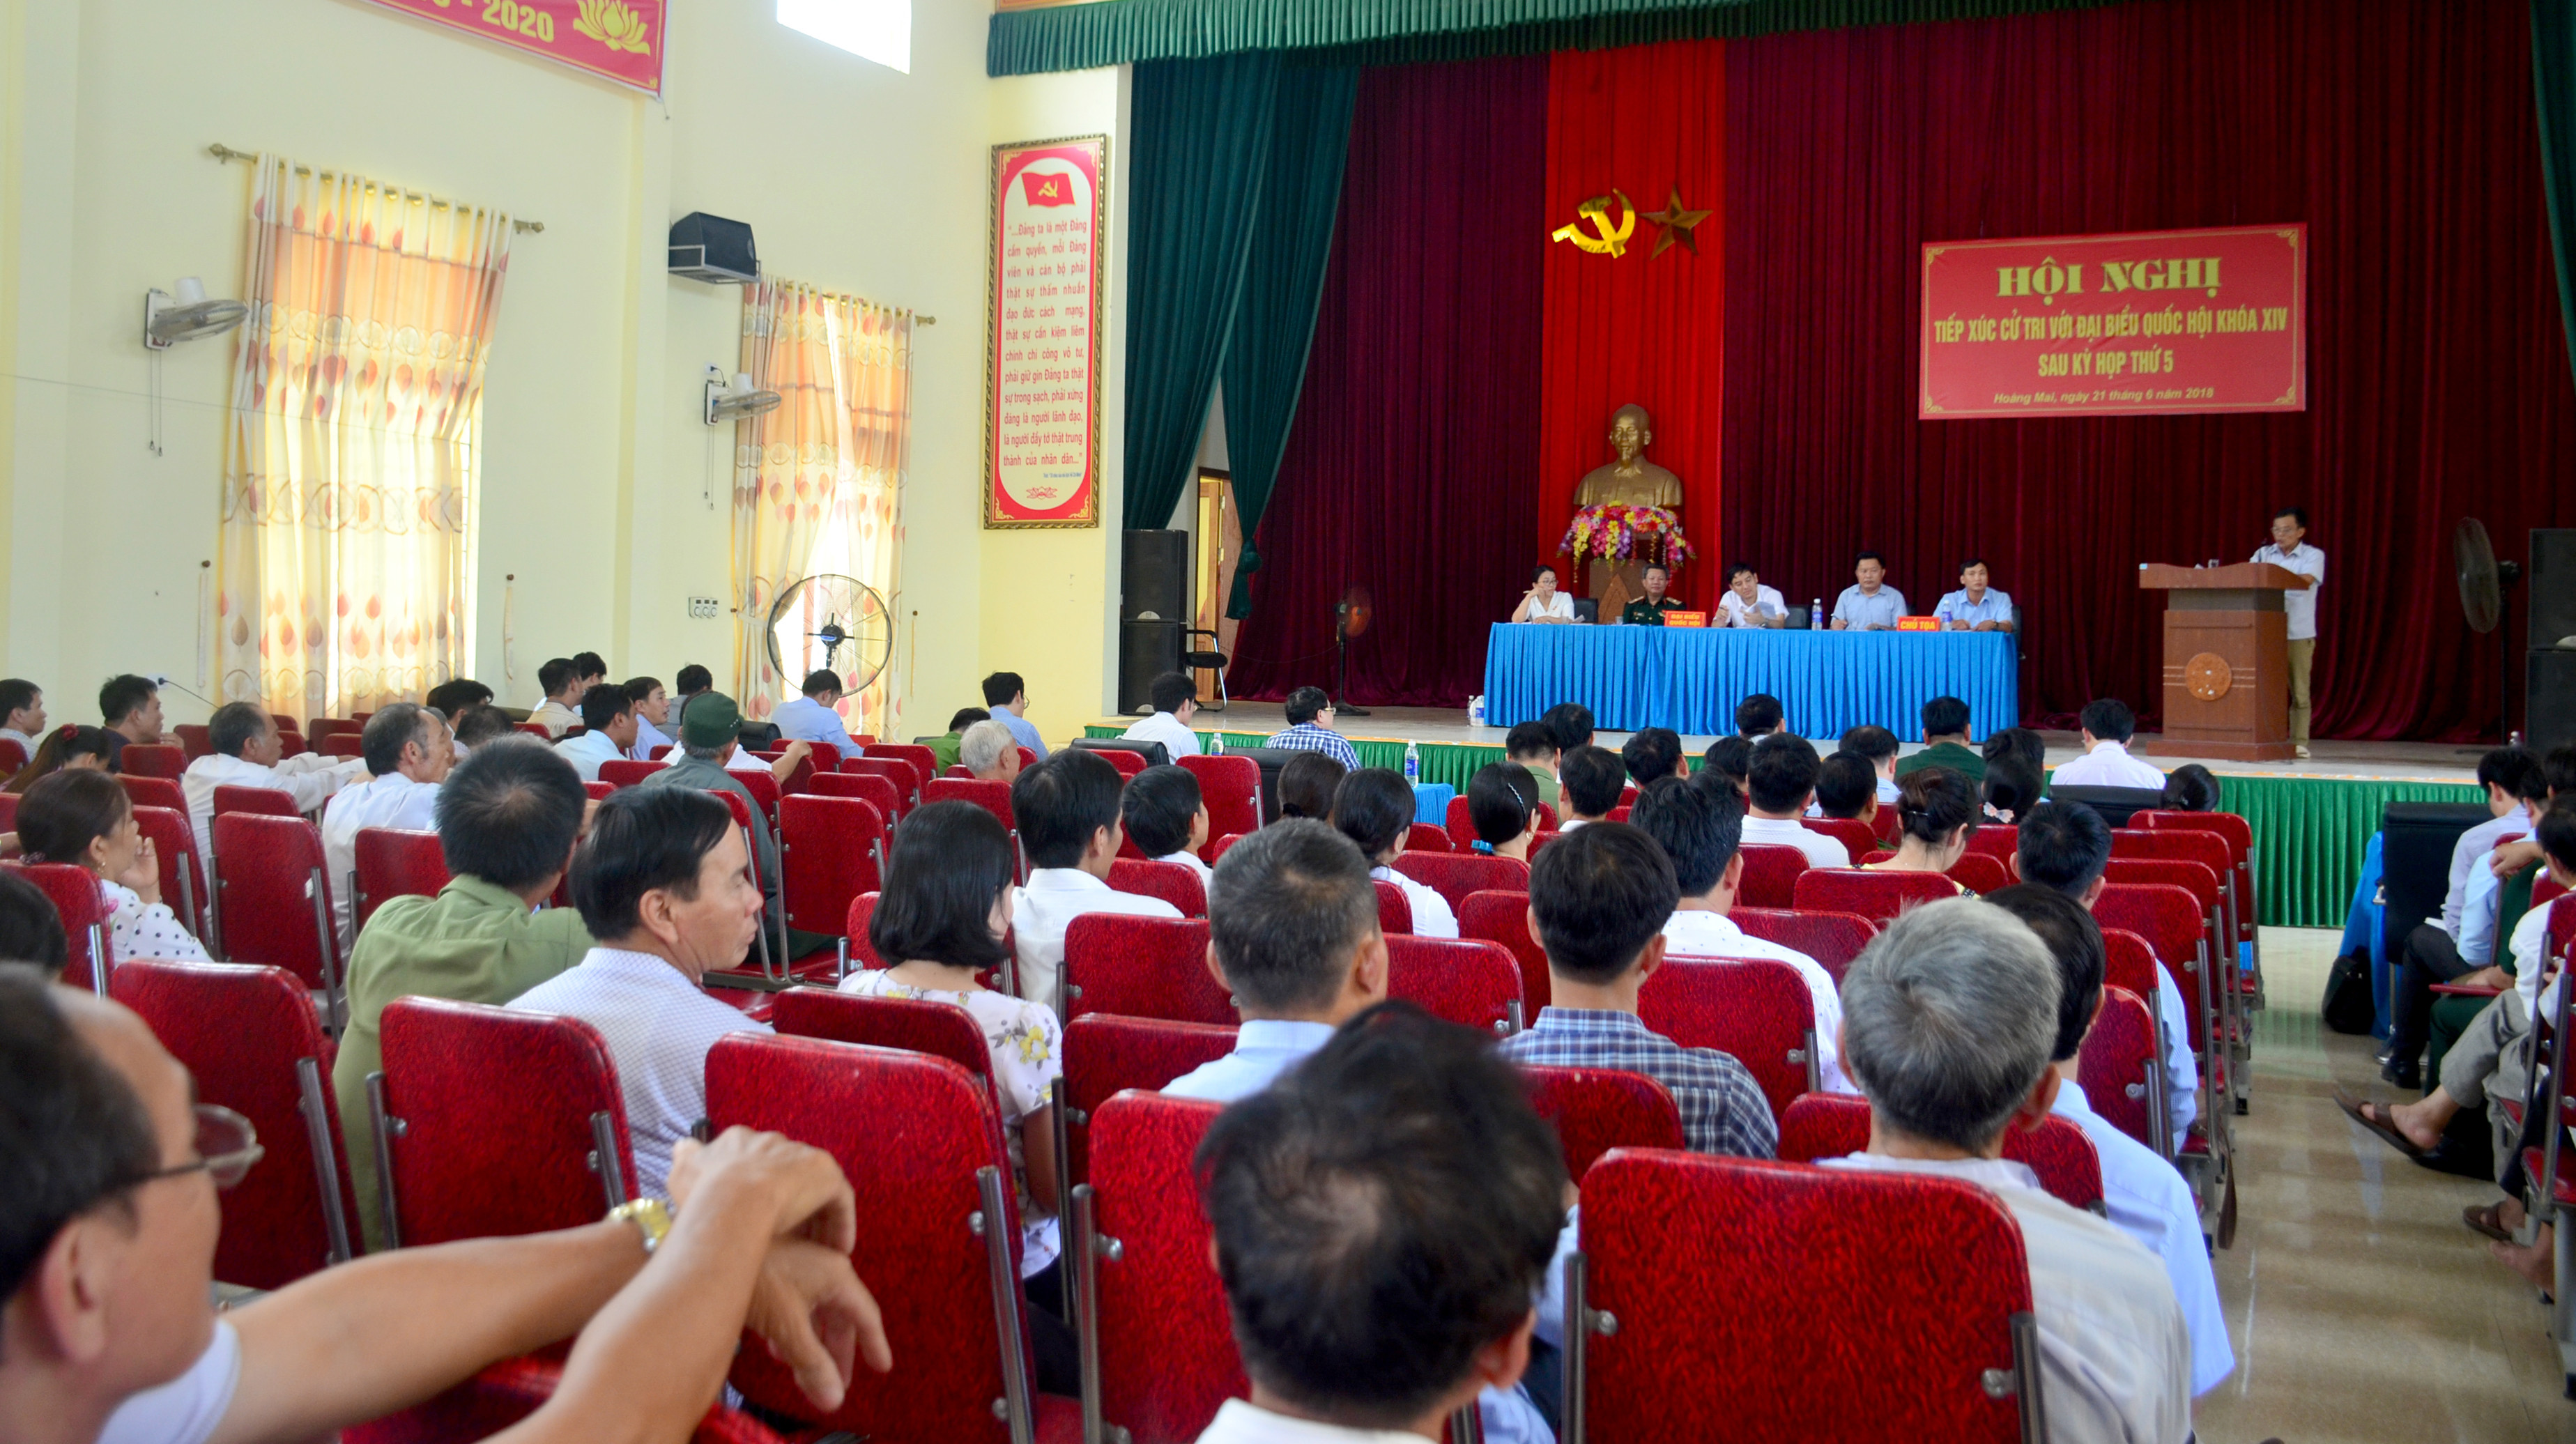 Toàn cảnh hội nghị tiếp xúc cử tri thị xã Hoàng Mai. Ảnh: Thành Duy